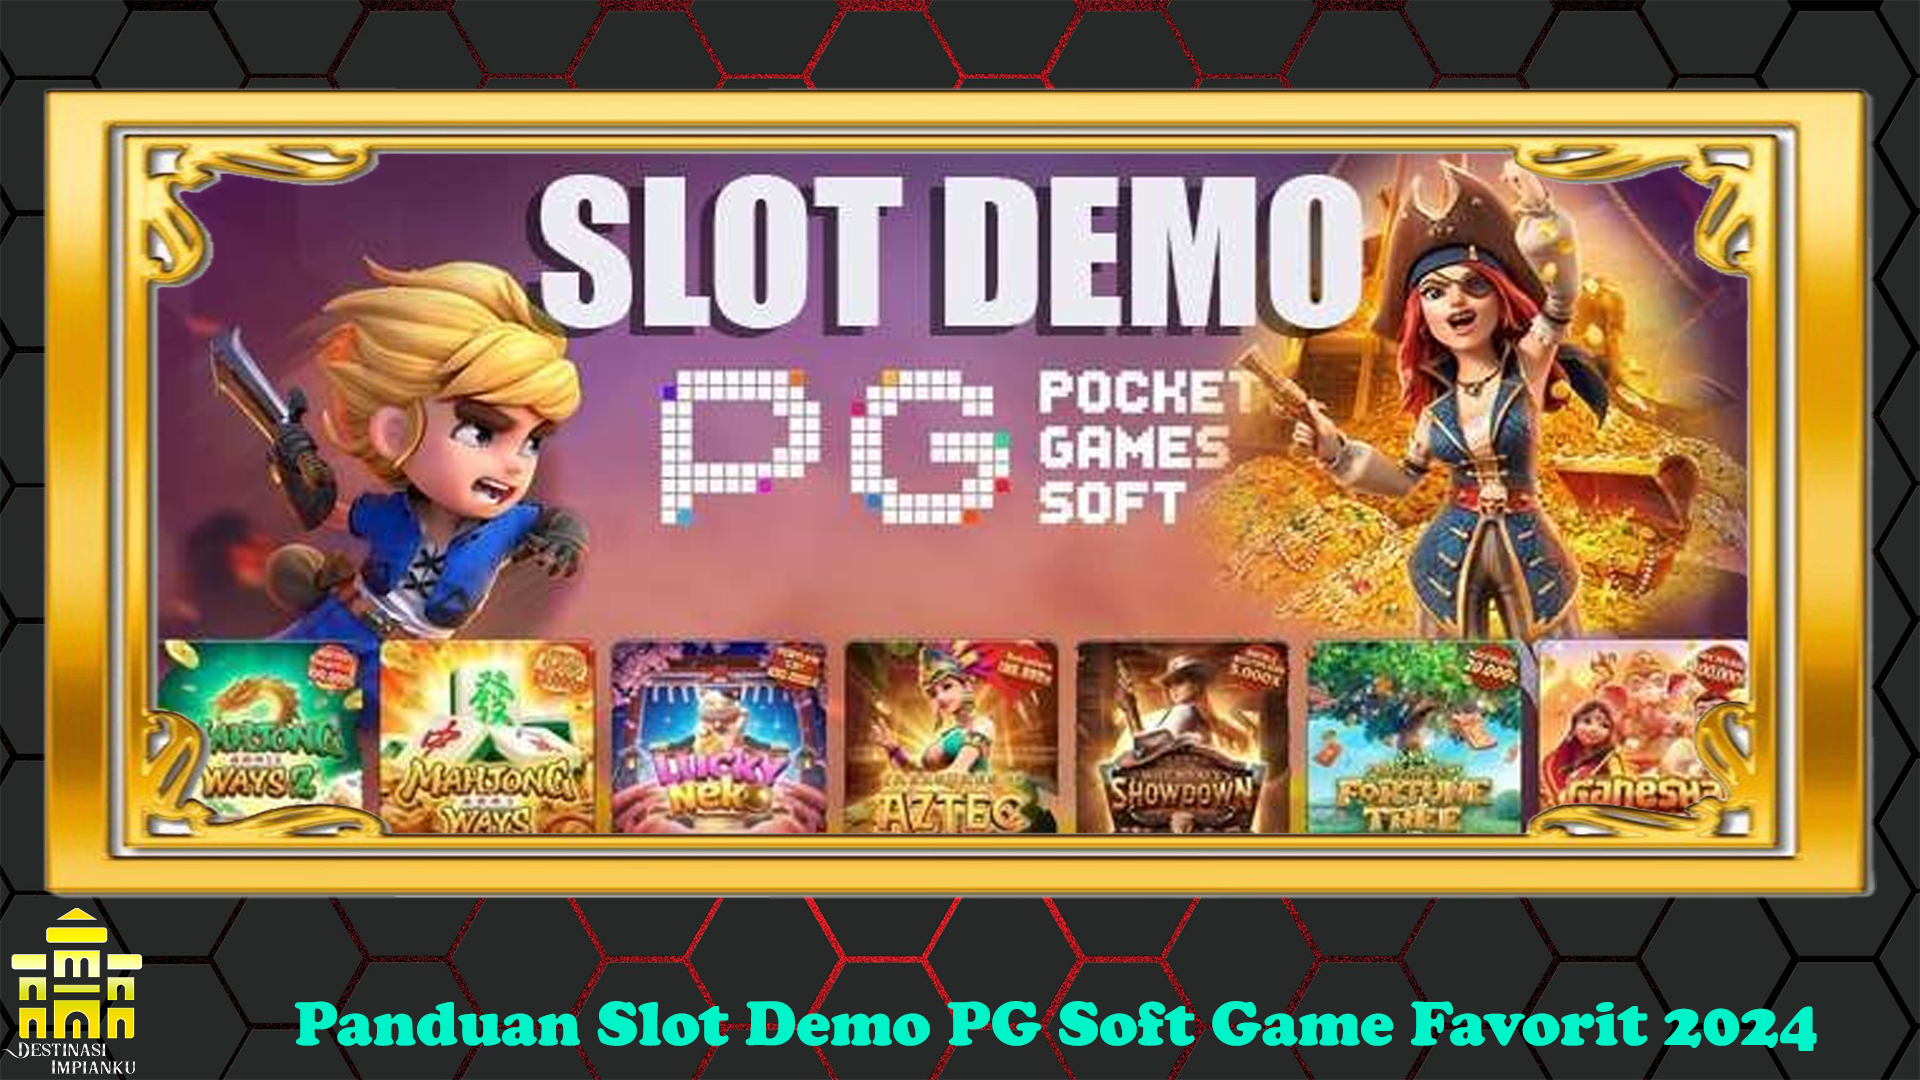 Panduan Slot Demo PG Soft Game Favorit 2024